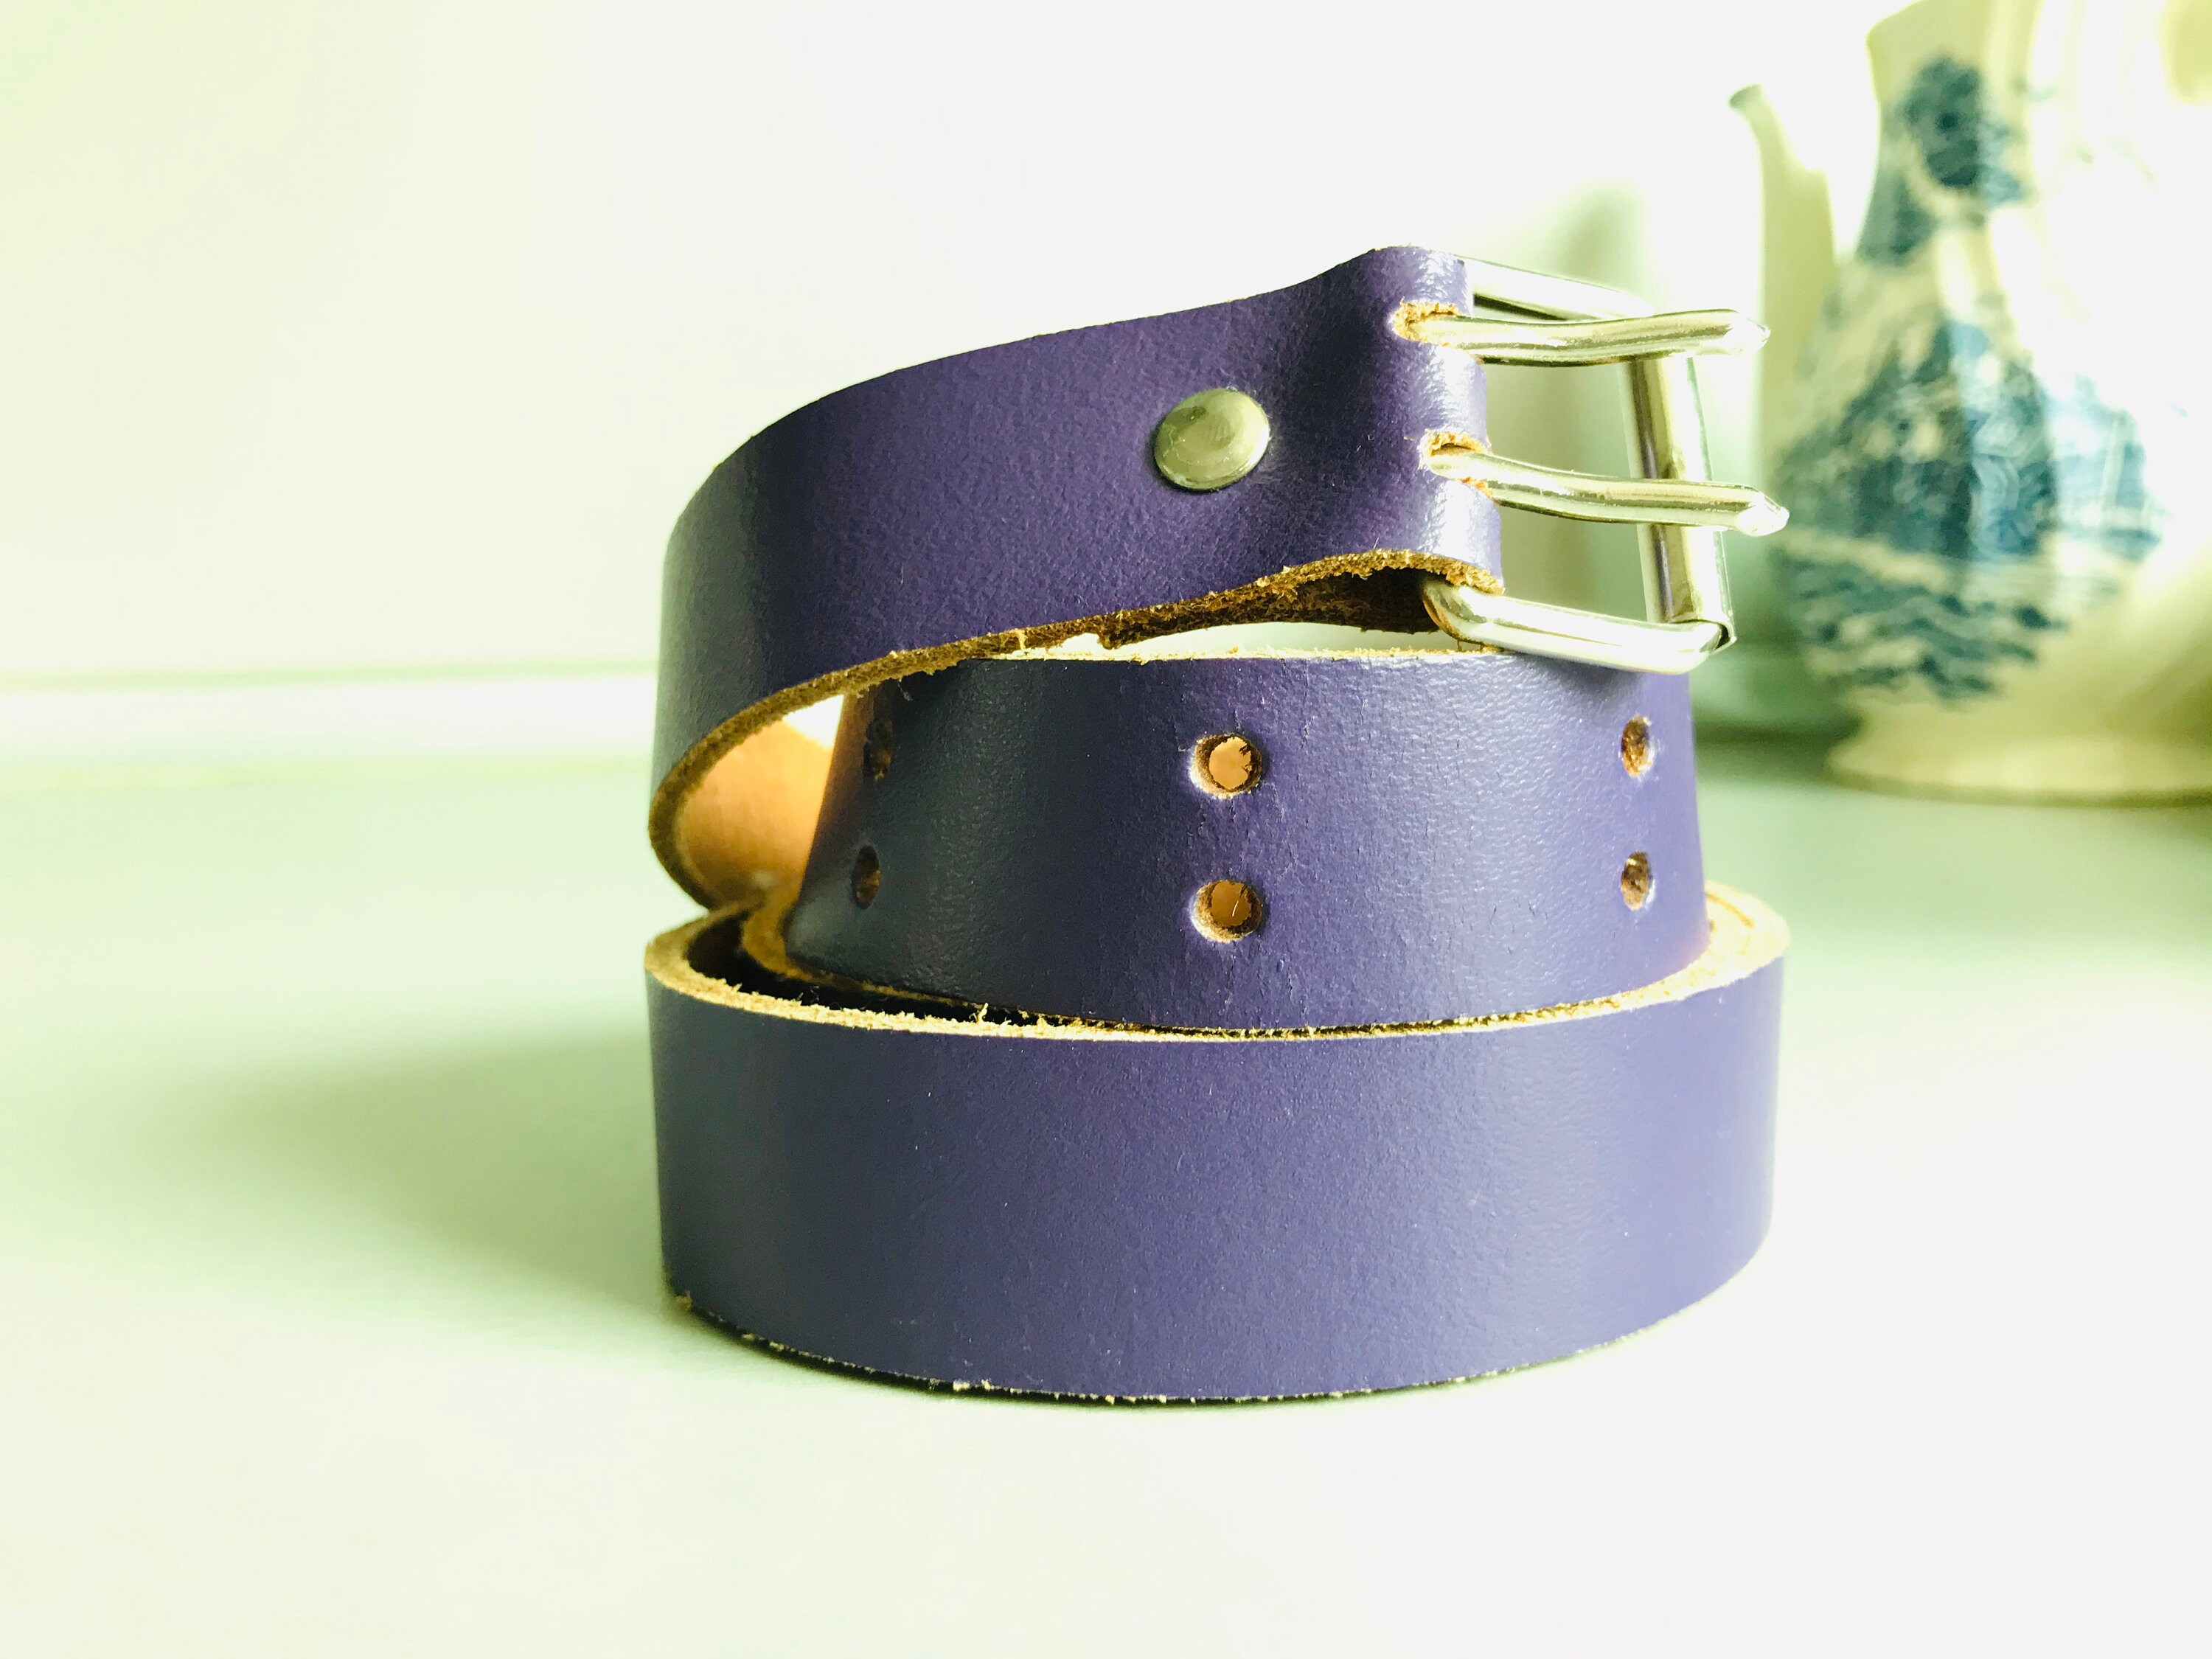 Pre-owned Belt In Purple